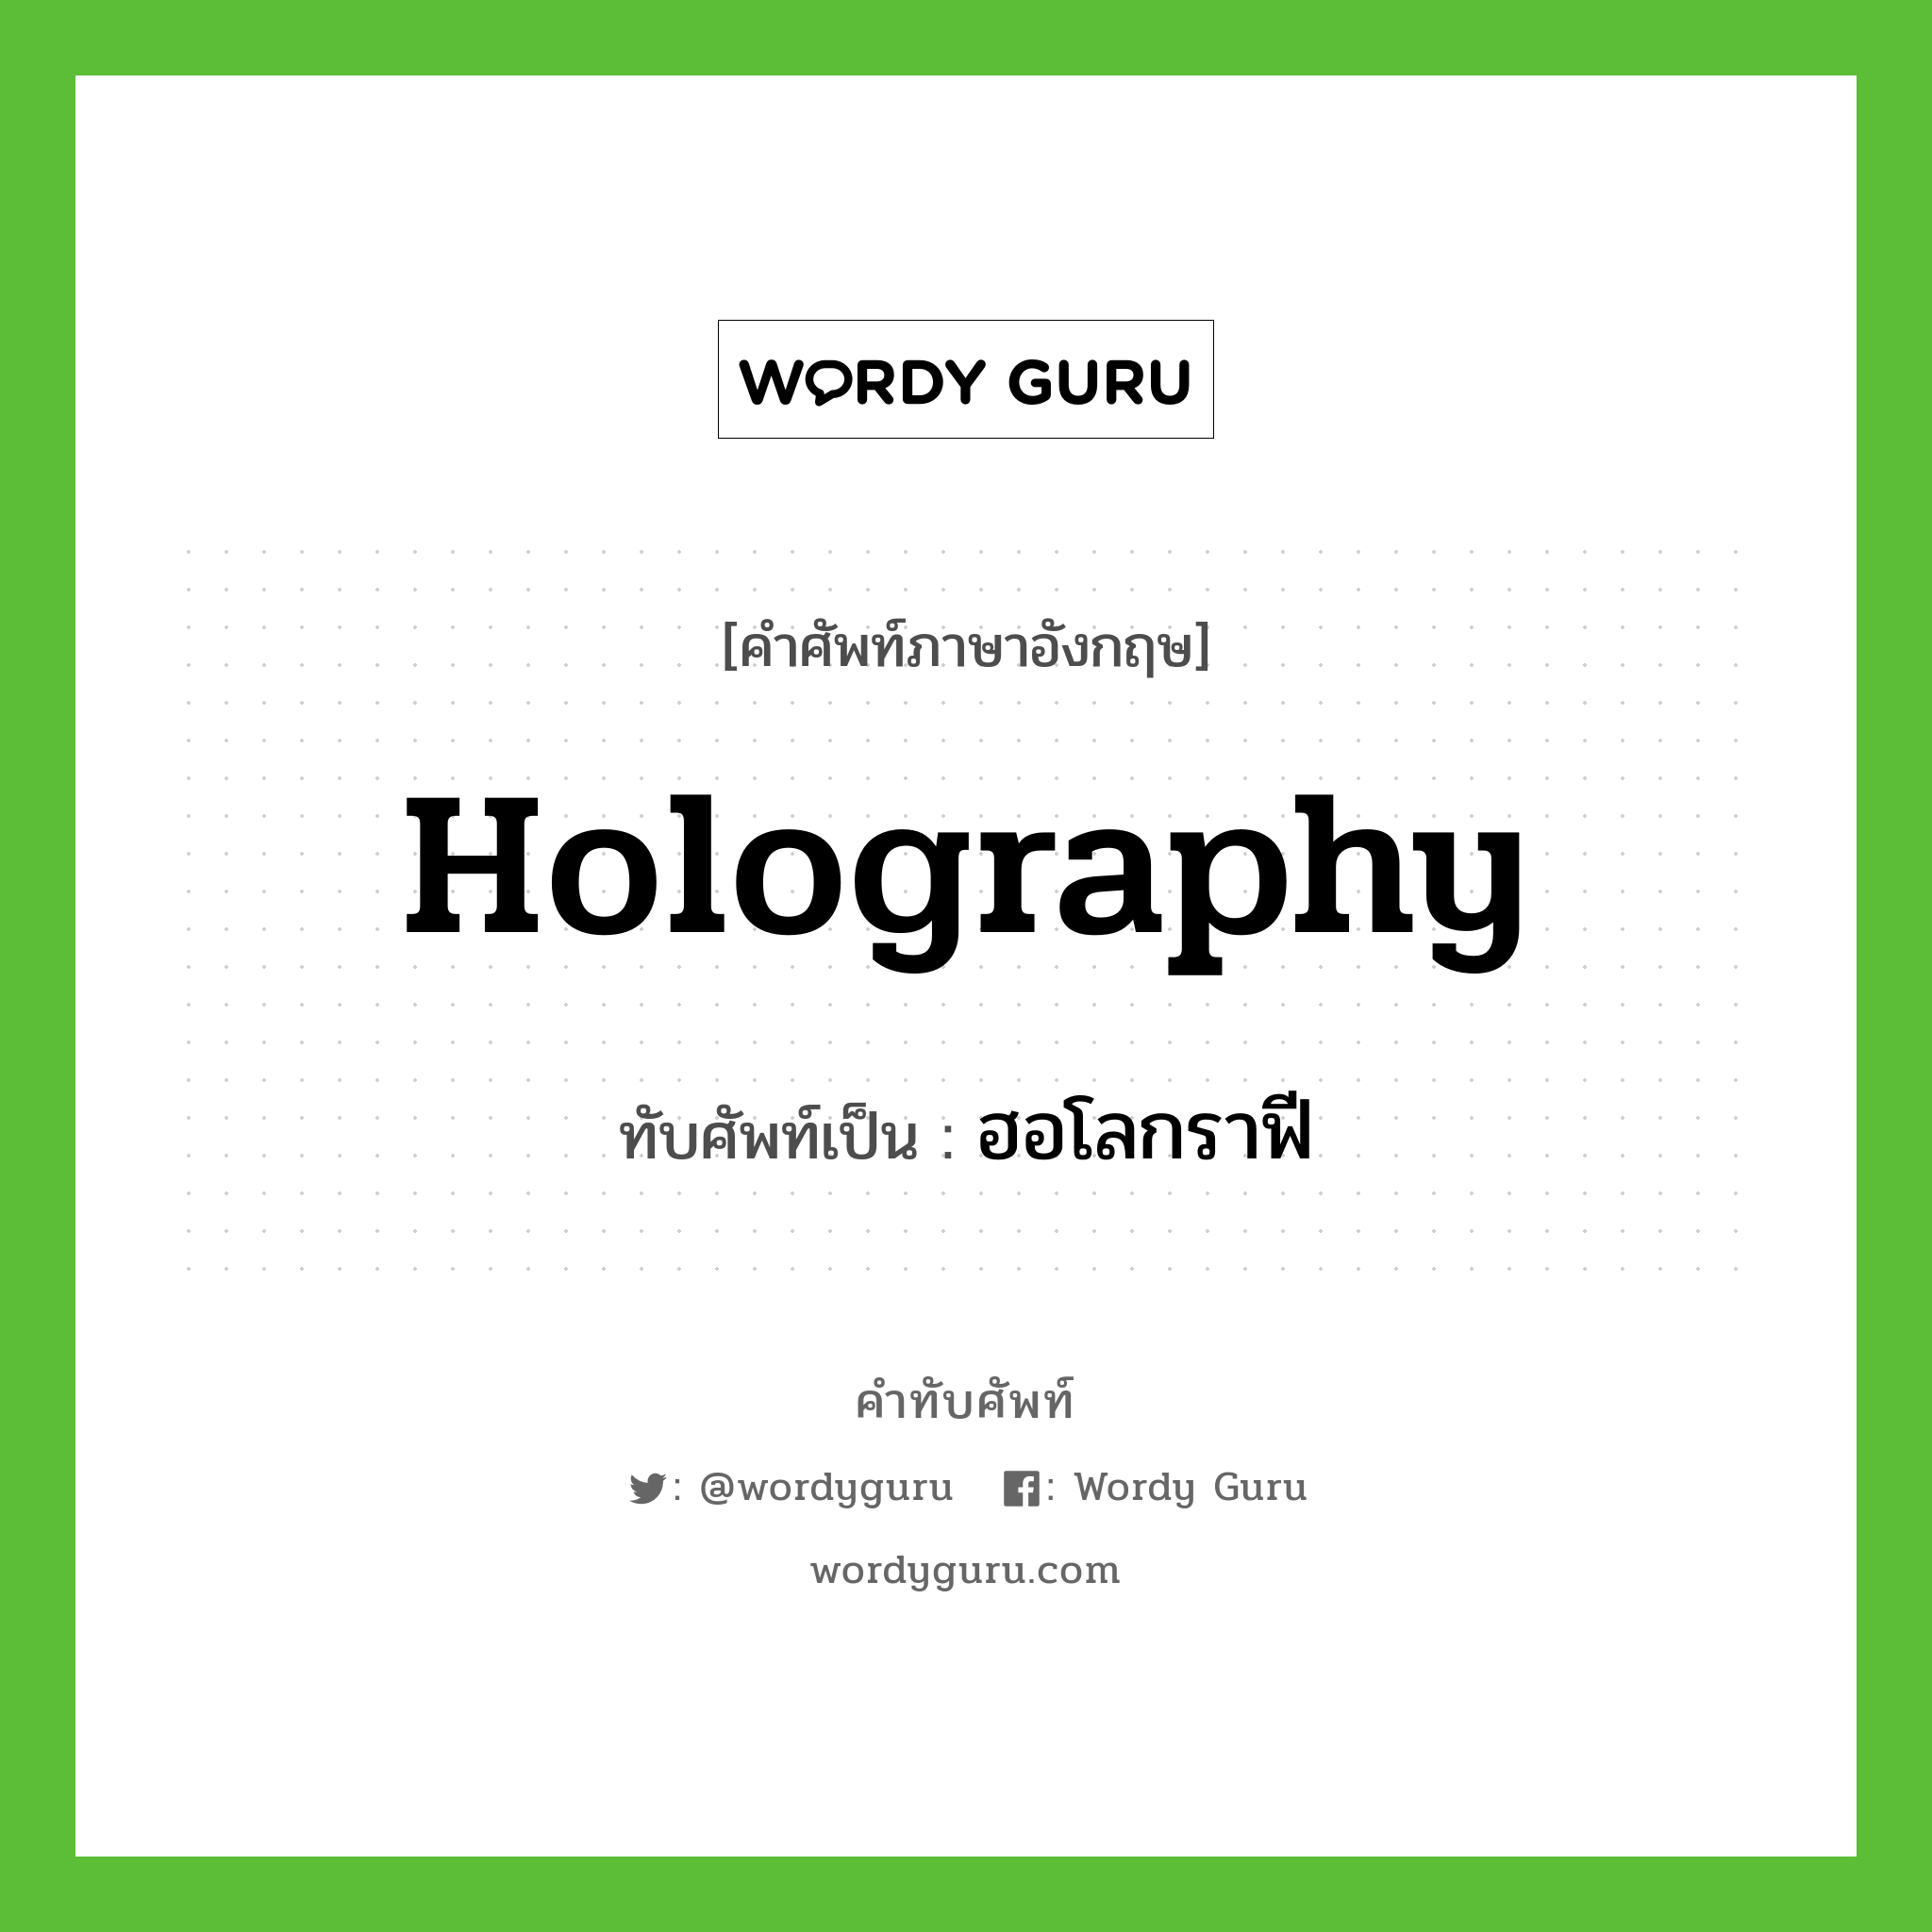 holography เขียนเป็นคำไทยว่าอะไร?, คำศัพท์ภาษาอังกฤษ holography ทับศัพท์เป็น ฮอโลกราฟี